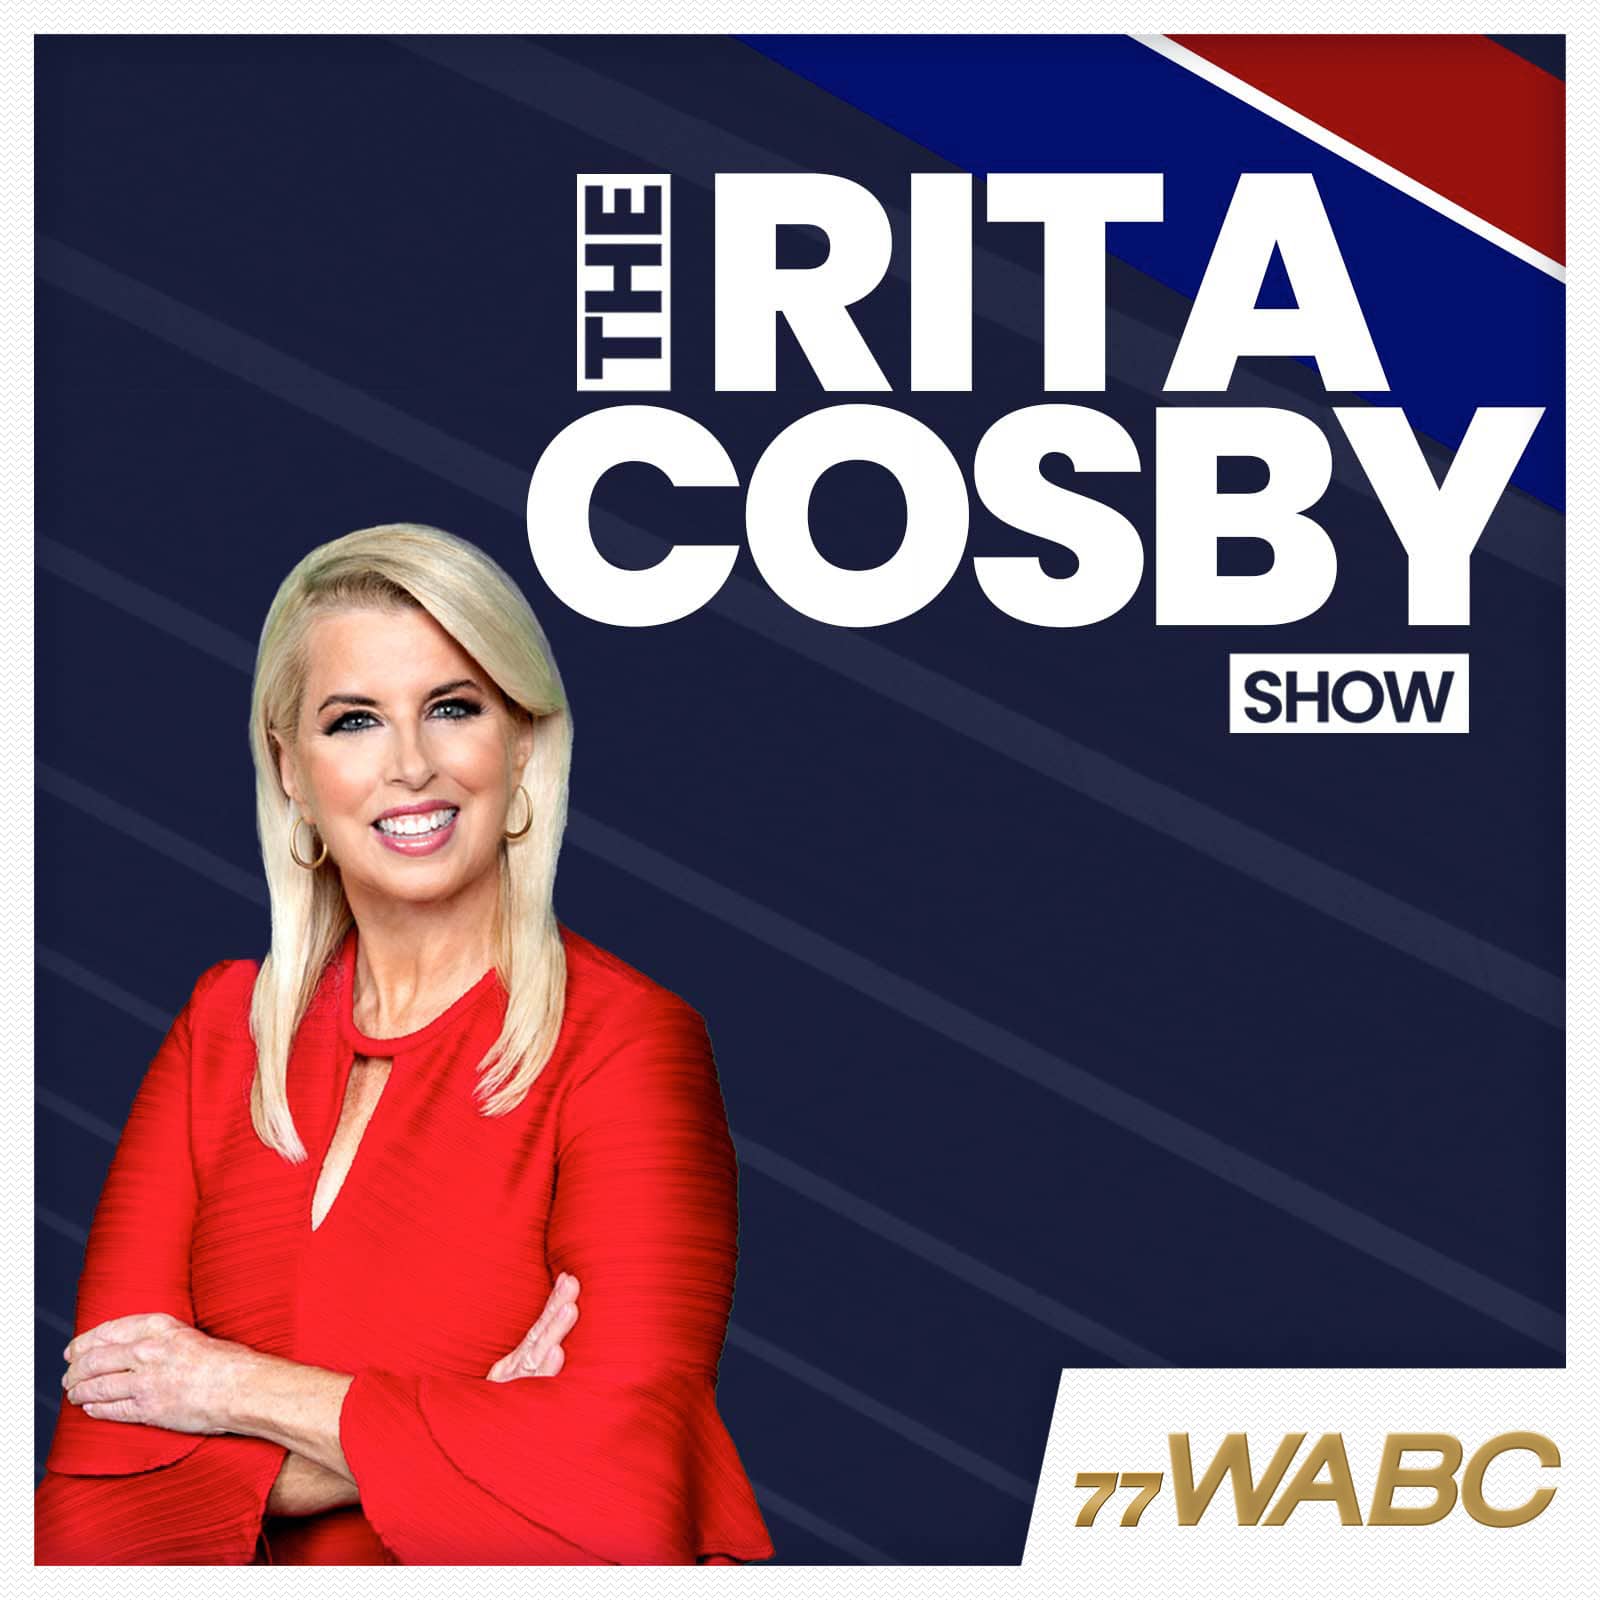 rita-cosby-podcast-new-logo-342